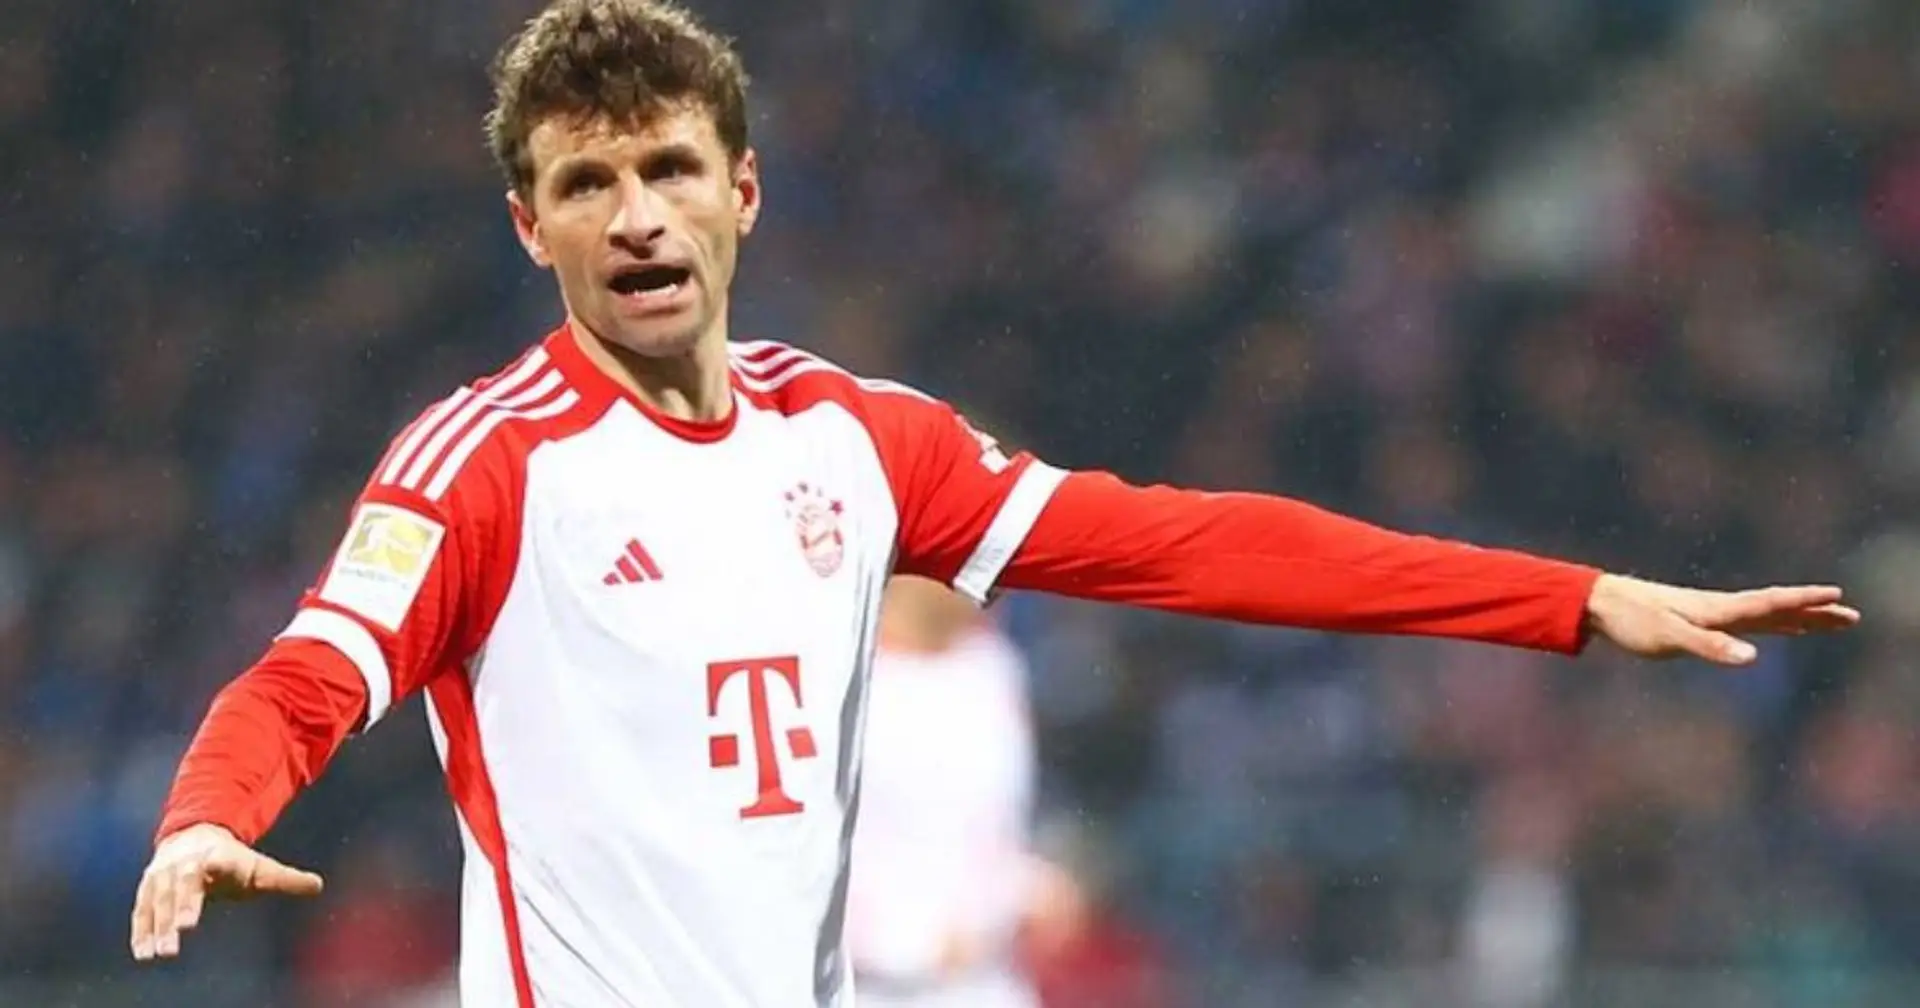 Müller brennt auf das Rückspiel gegen Lazio: "Machen wir uns an die Arbeit, um die große Chance zu nutzen"